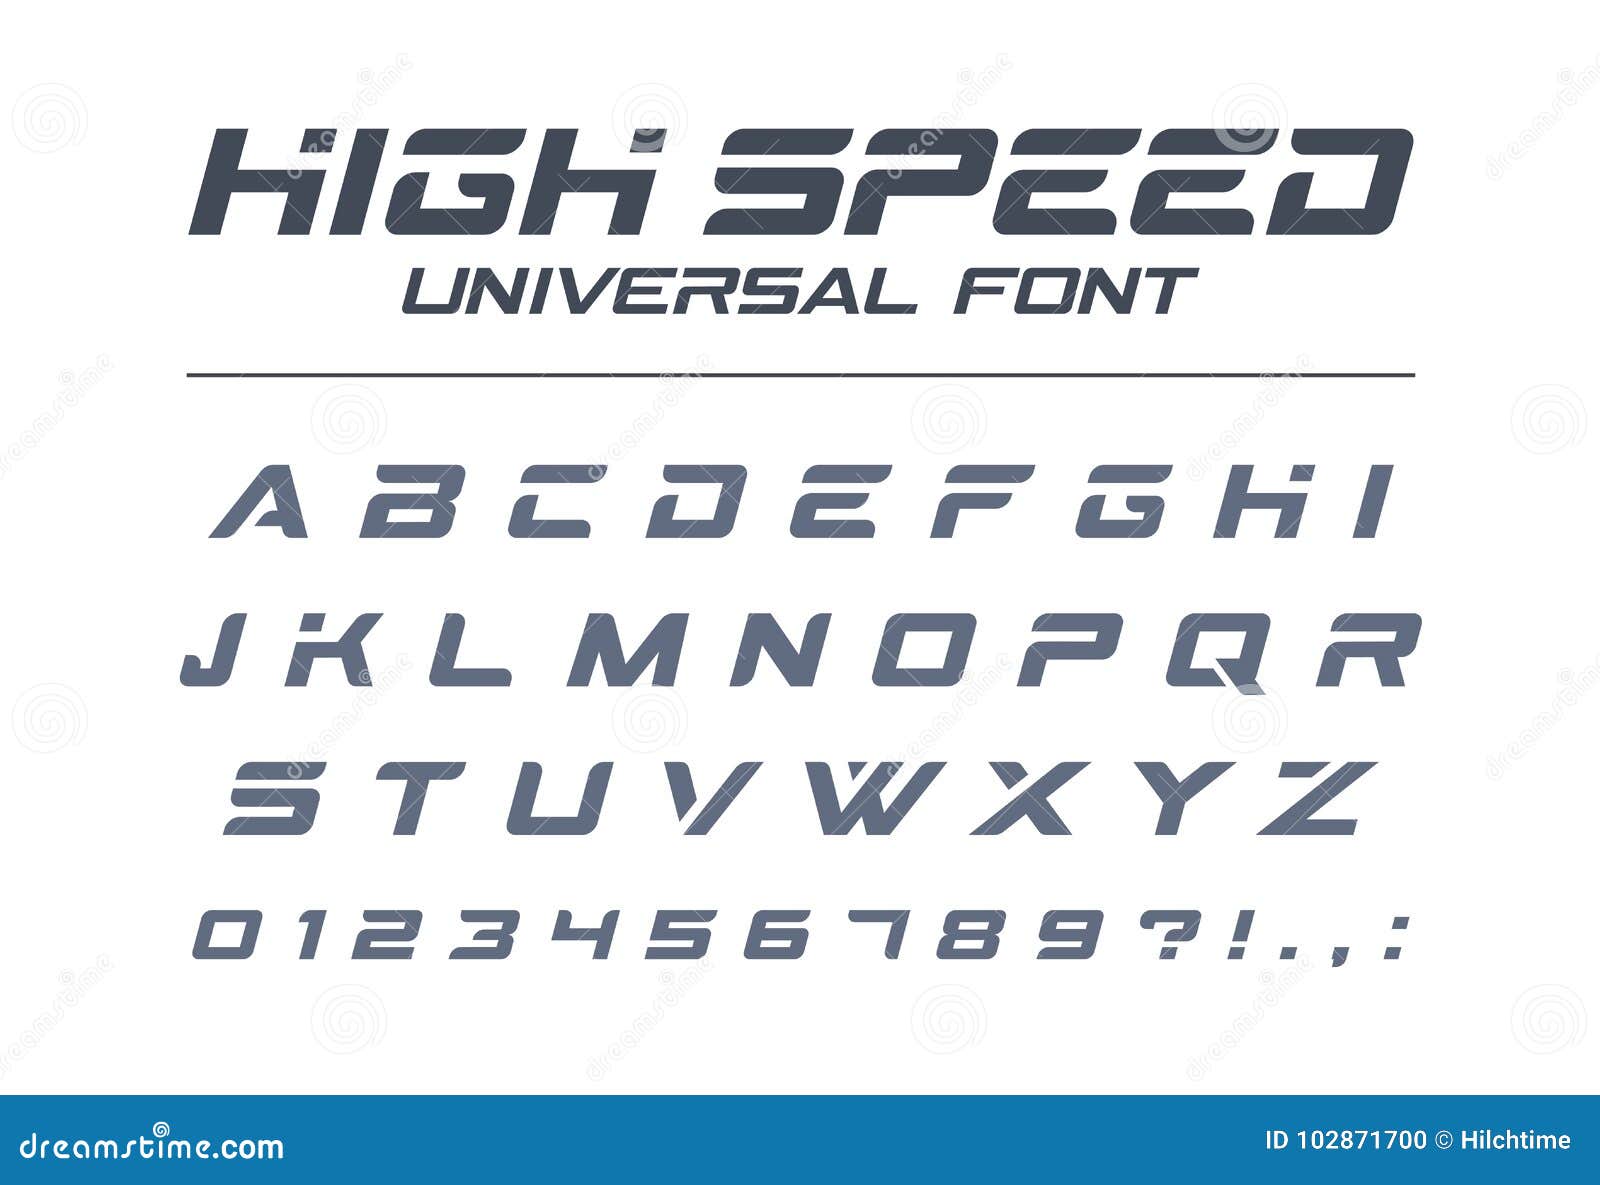 High Speed Universal Font  Fast Sport Futuristic  